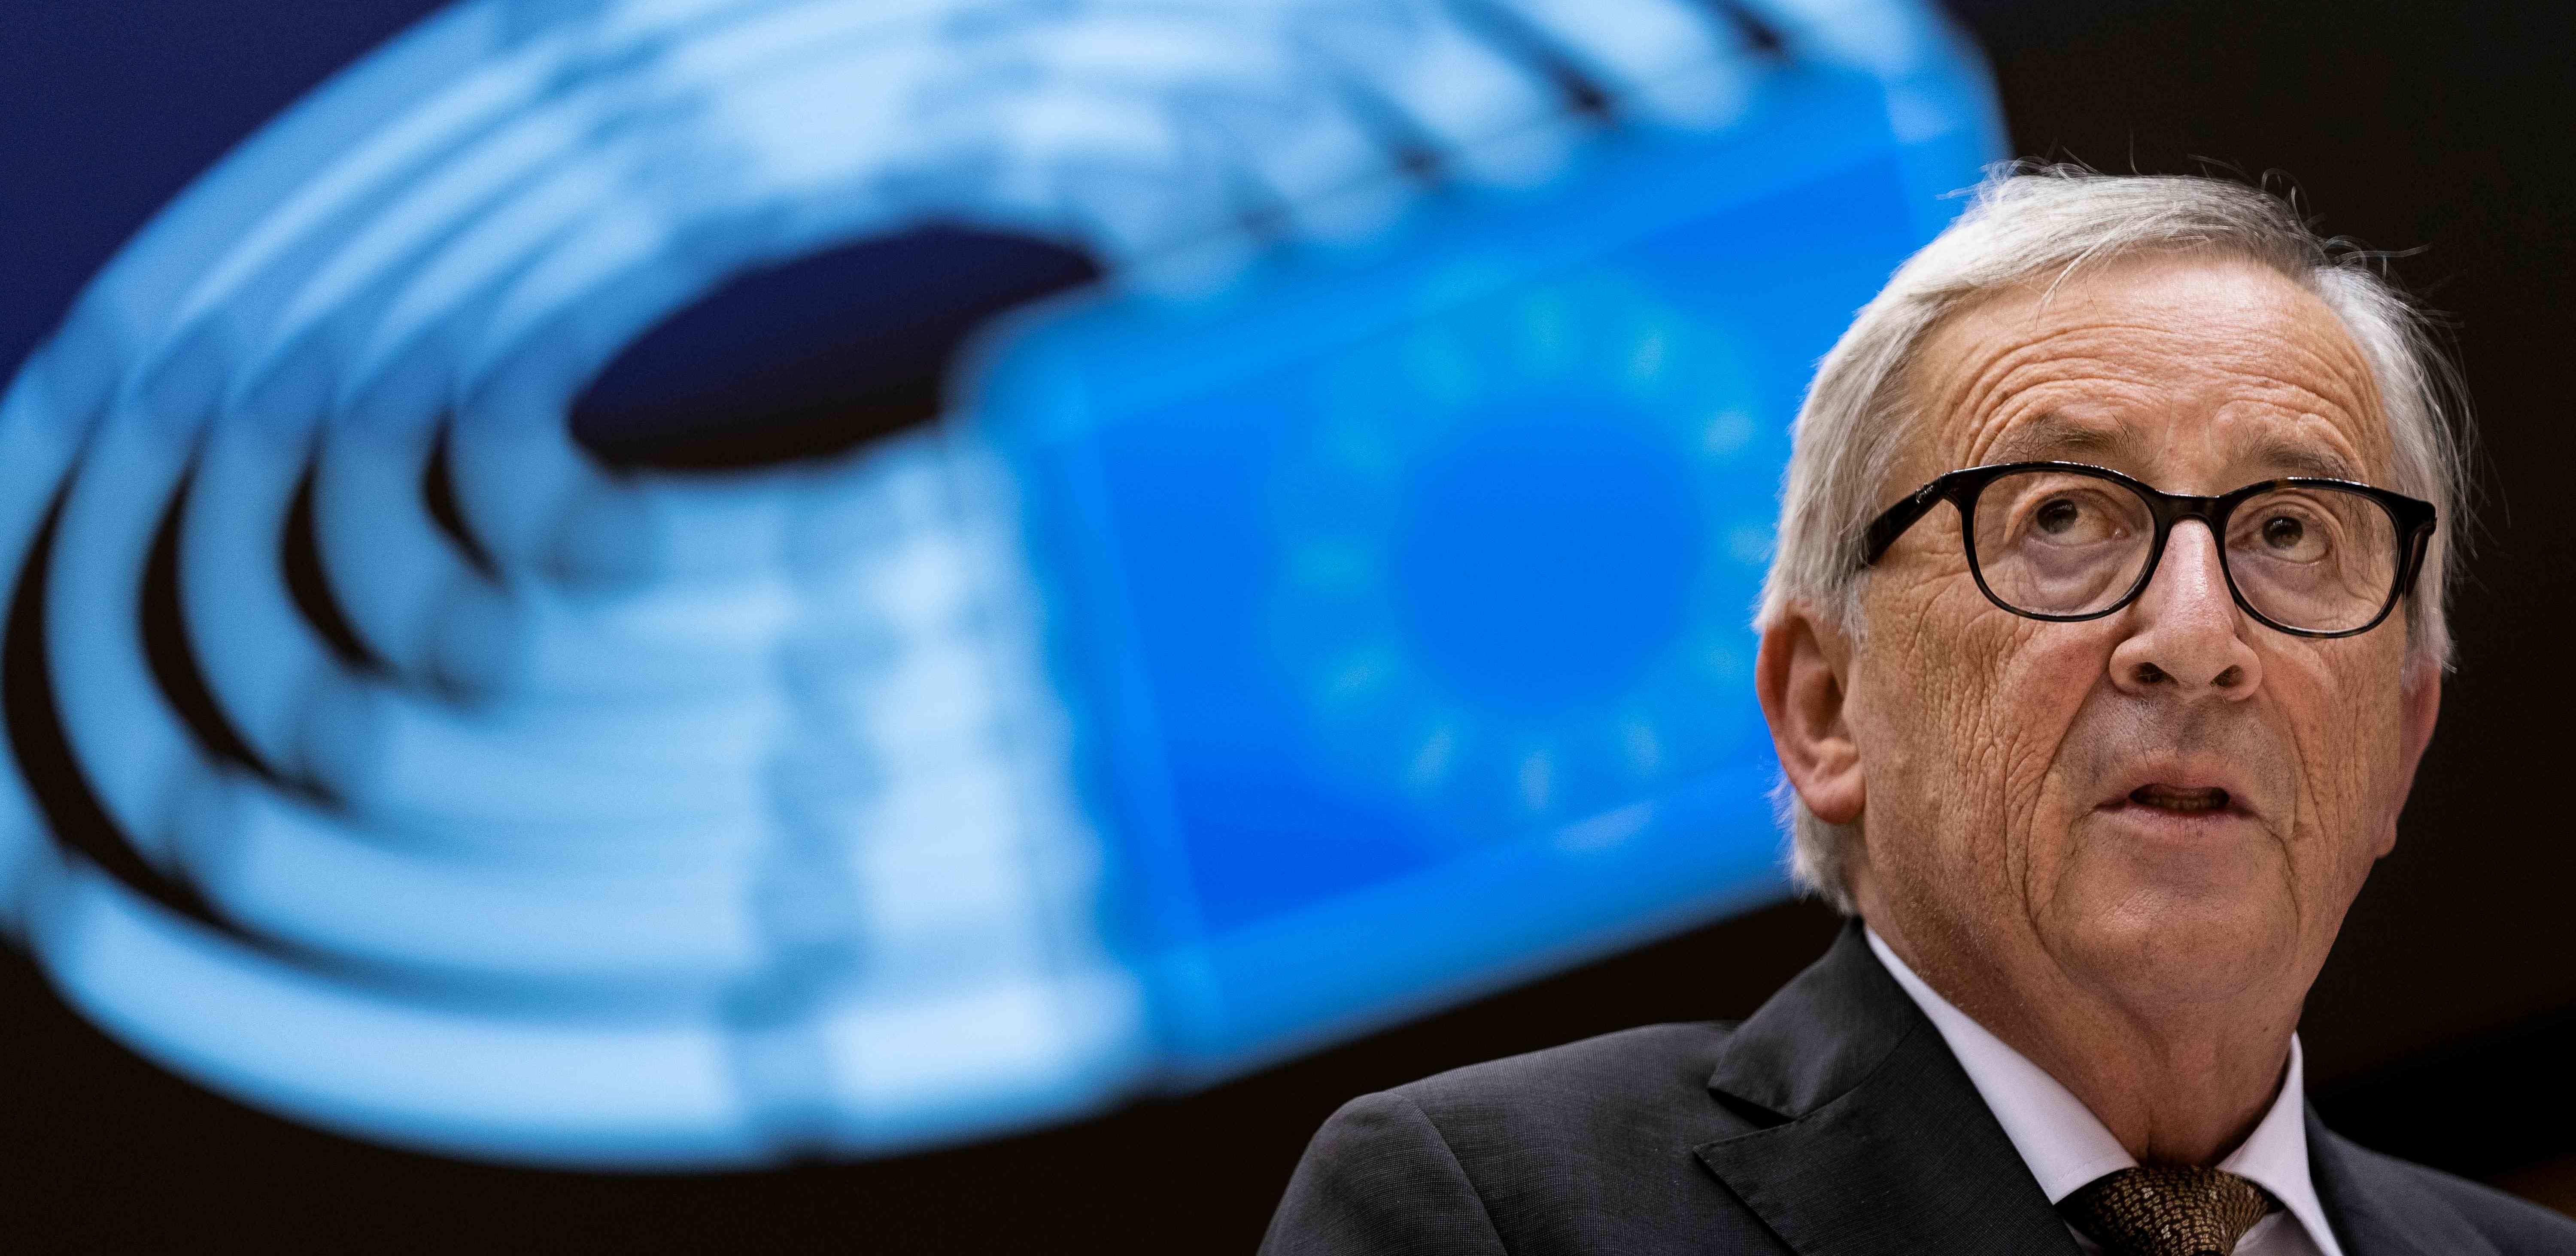 Brexit als größte Niederlage: EU-Kommissionspräsident Juncker zieht Bilanz im Kurier-Interview